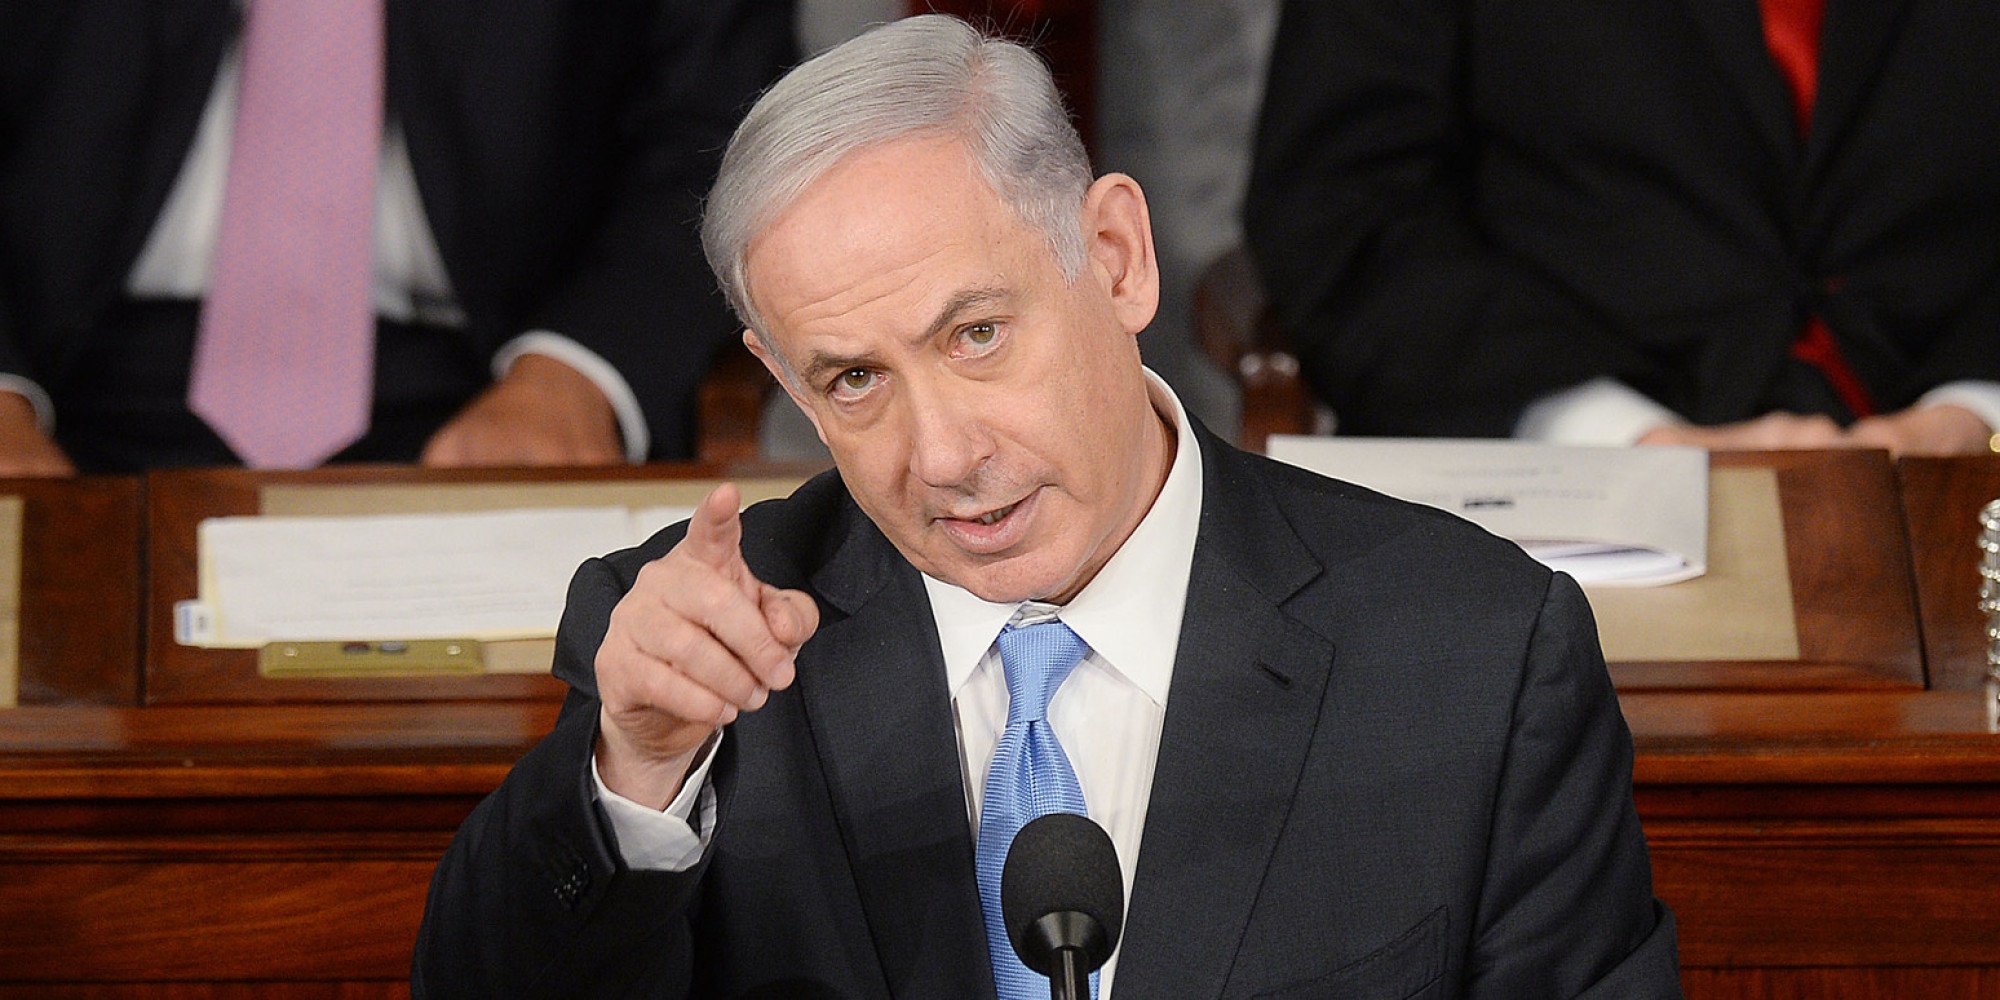 سخنرانی نتانیاهو چیزی را در روند مذاکرات هسته ای تغییر نمی دهد/ تندروها هم از این سخنرانی راضی نشدند